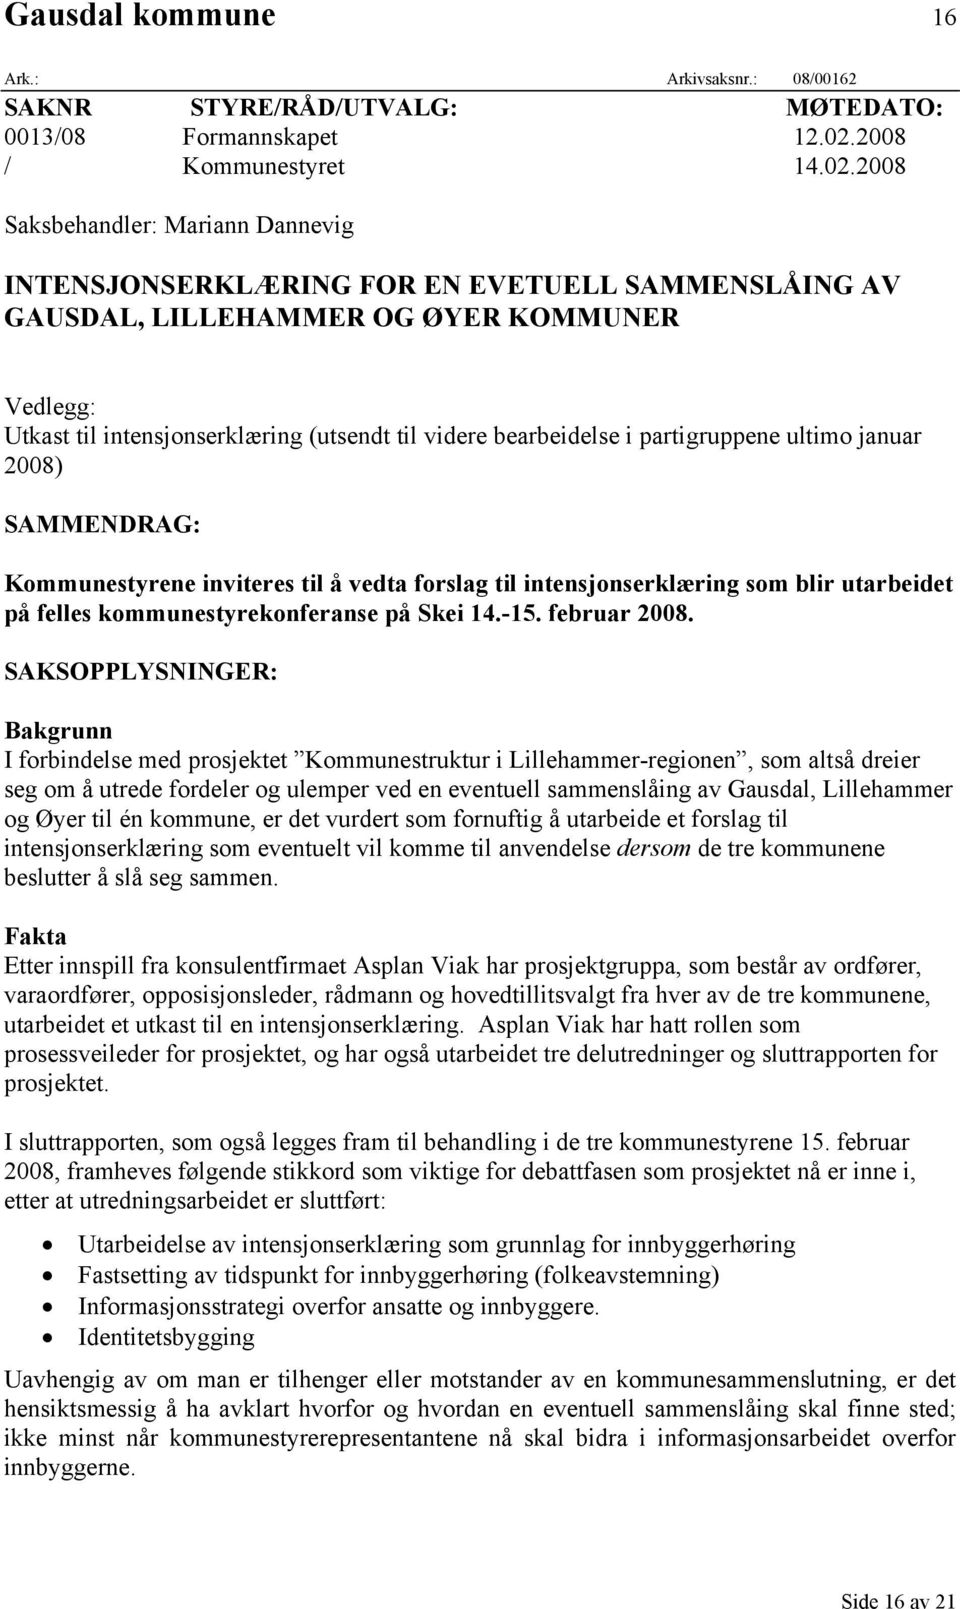 2008 Saksbehandler: Mariann Dannevig INTENSJONSERKLÆRING FOR EN EVETUELL SAMMENSLÅING AV GAUSDAL, LILLEHAMMER OG ØYER KOMMUNER Vedlegg: Utkast til intensjonserklæring (utsendt til videre bearbeidelse